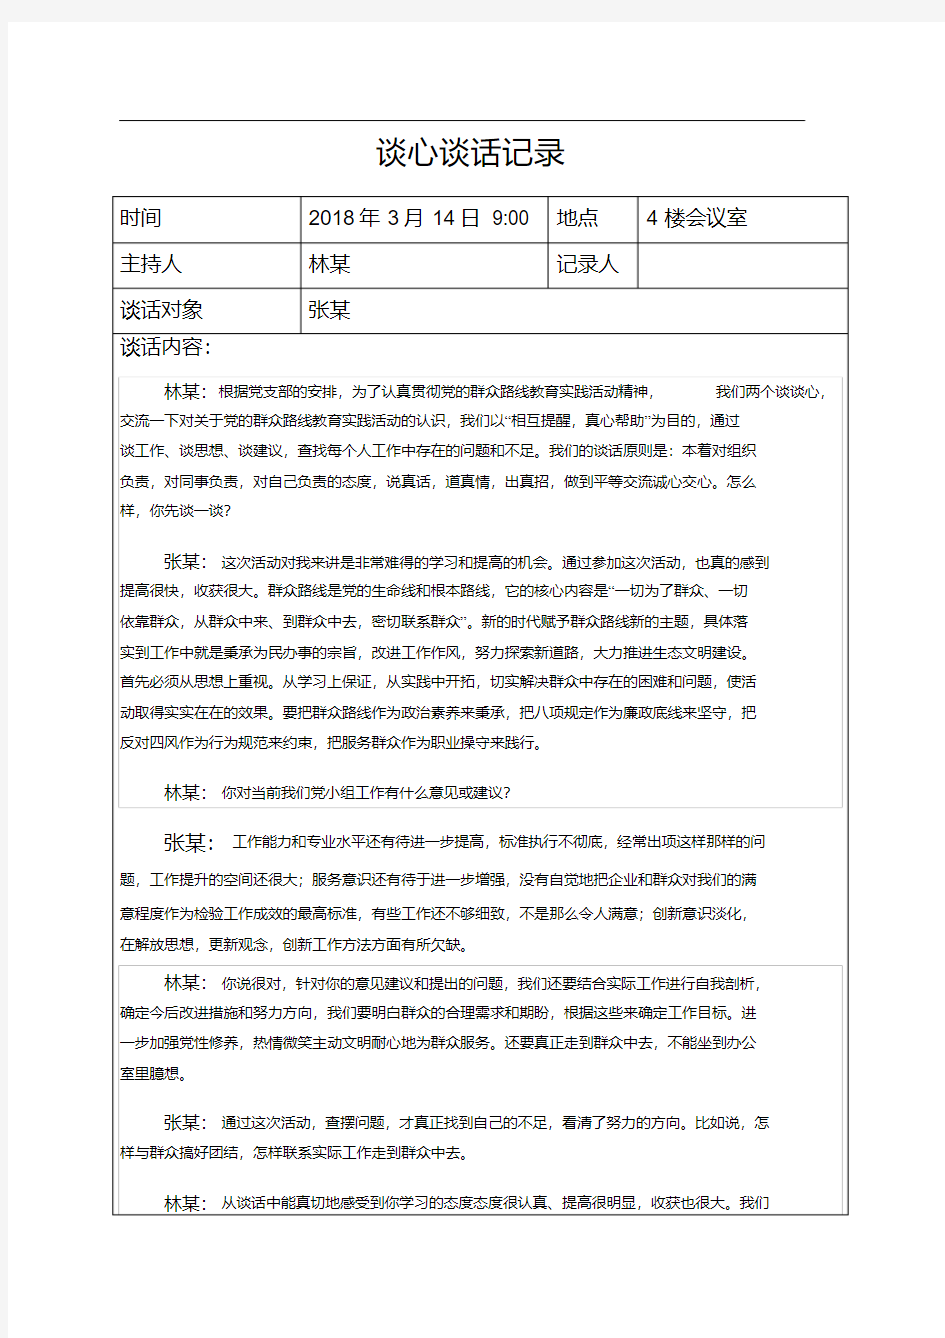 2018年党小组谈心谈话记录.pdf